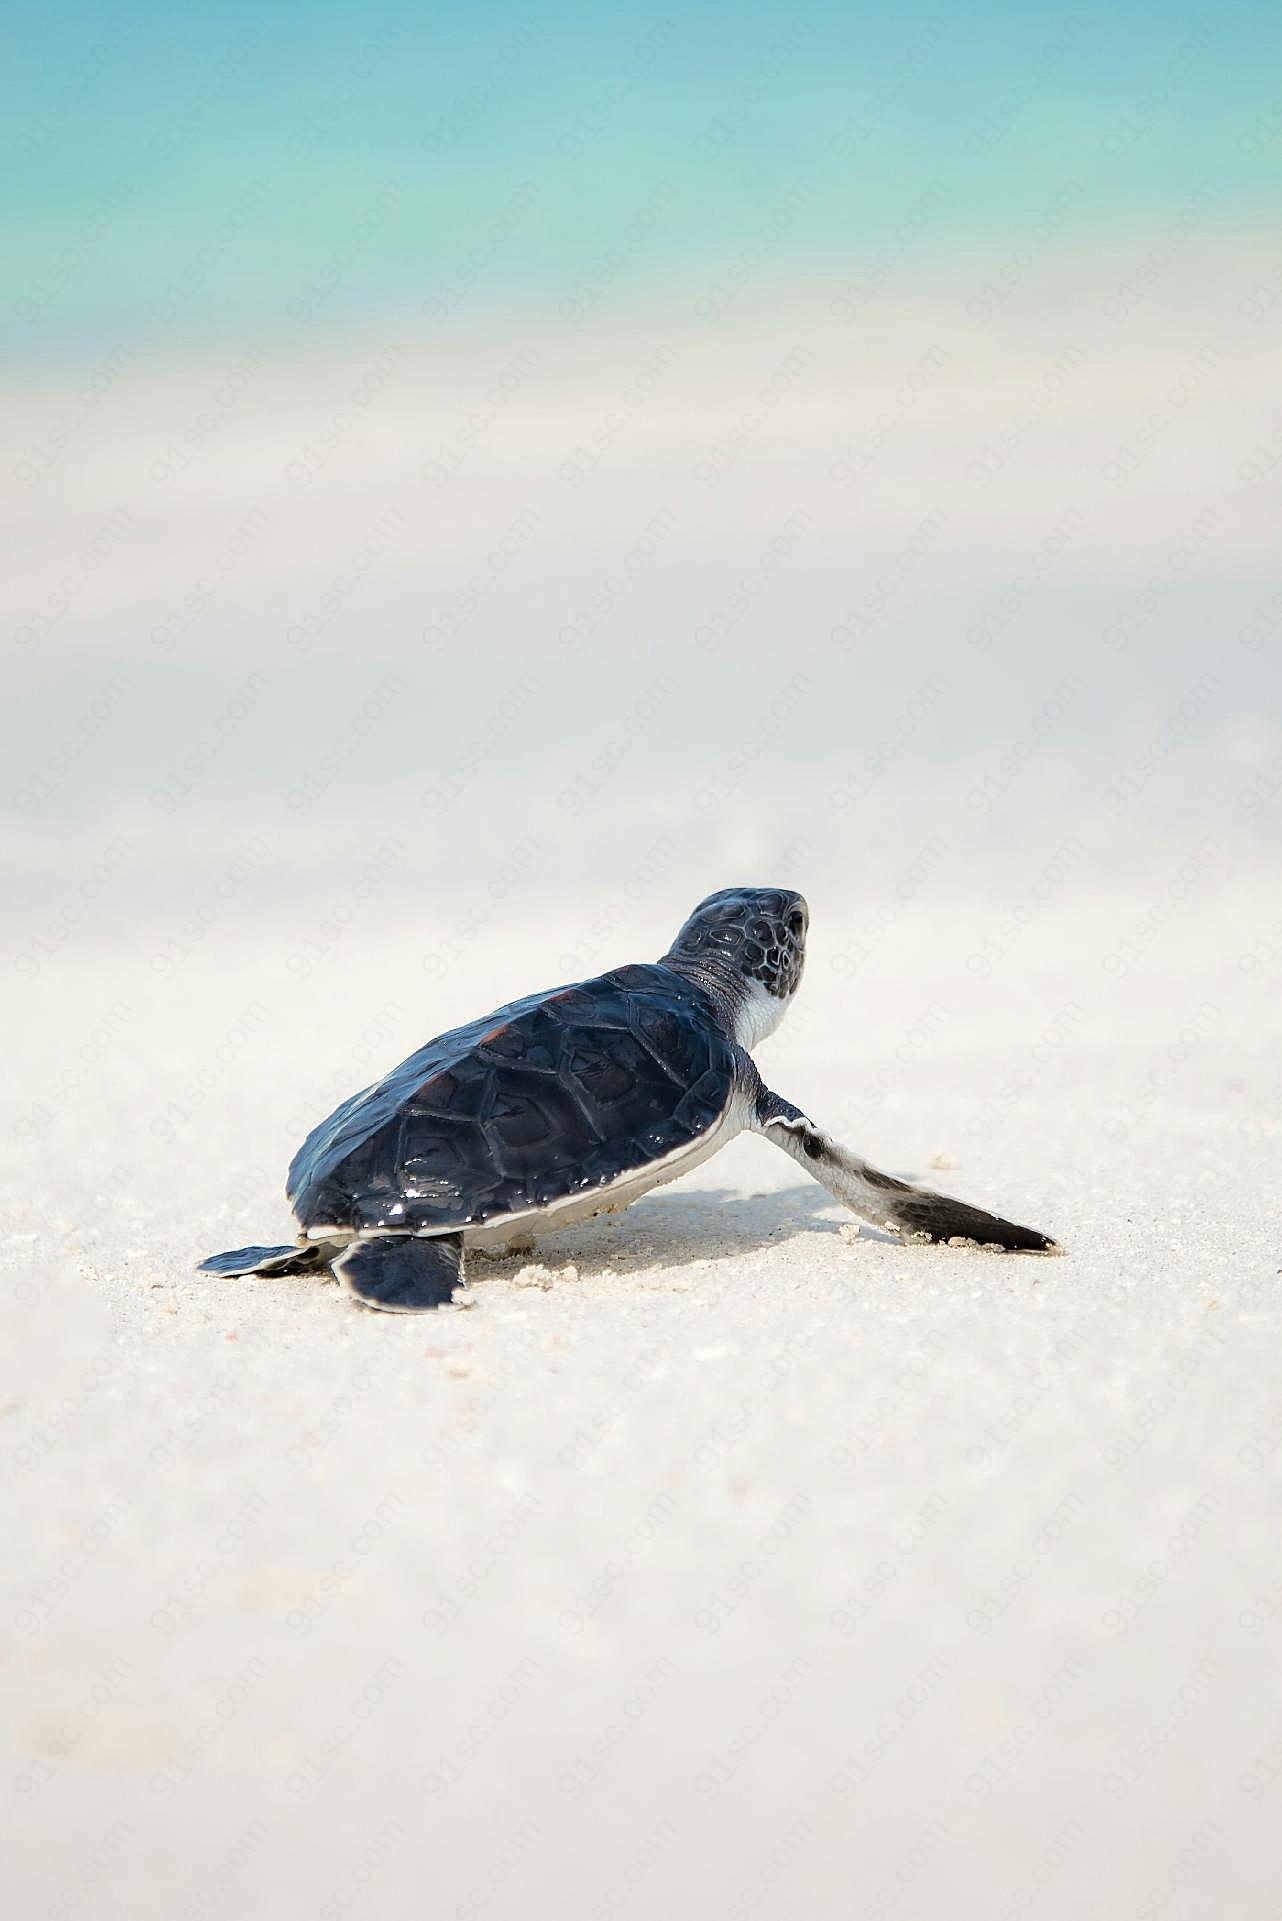 沙滩上的小海龟图片高清